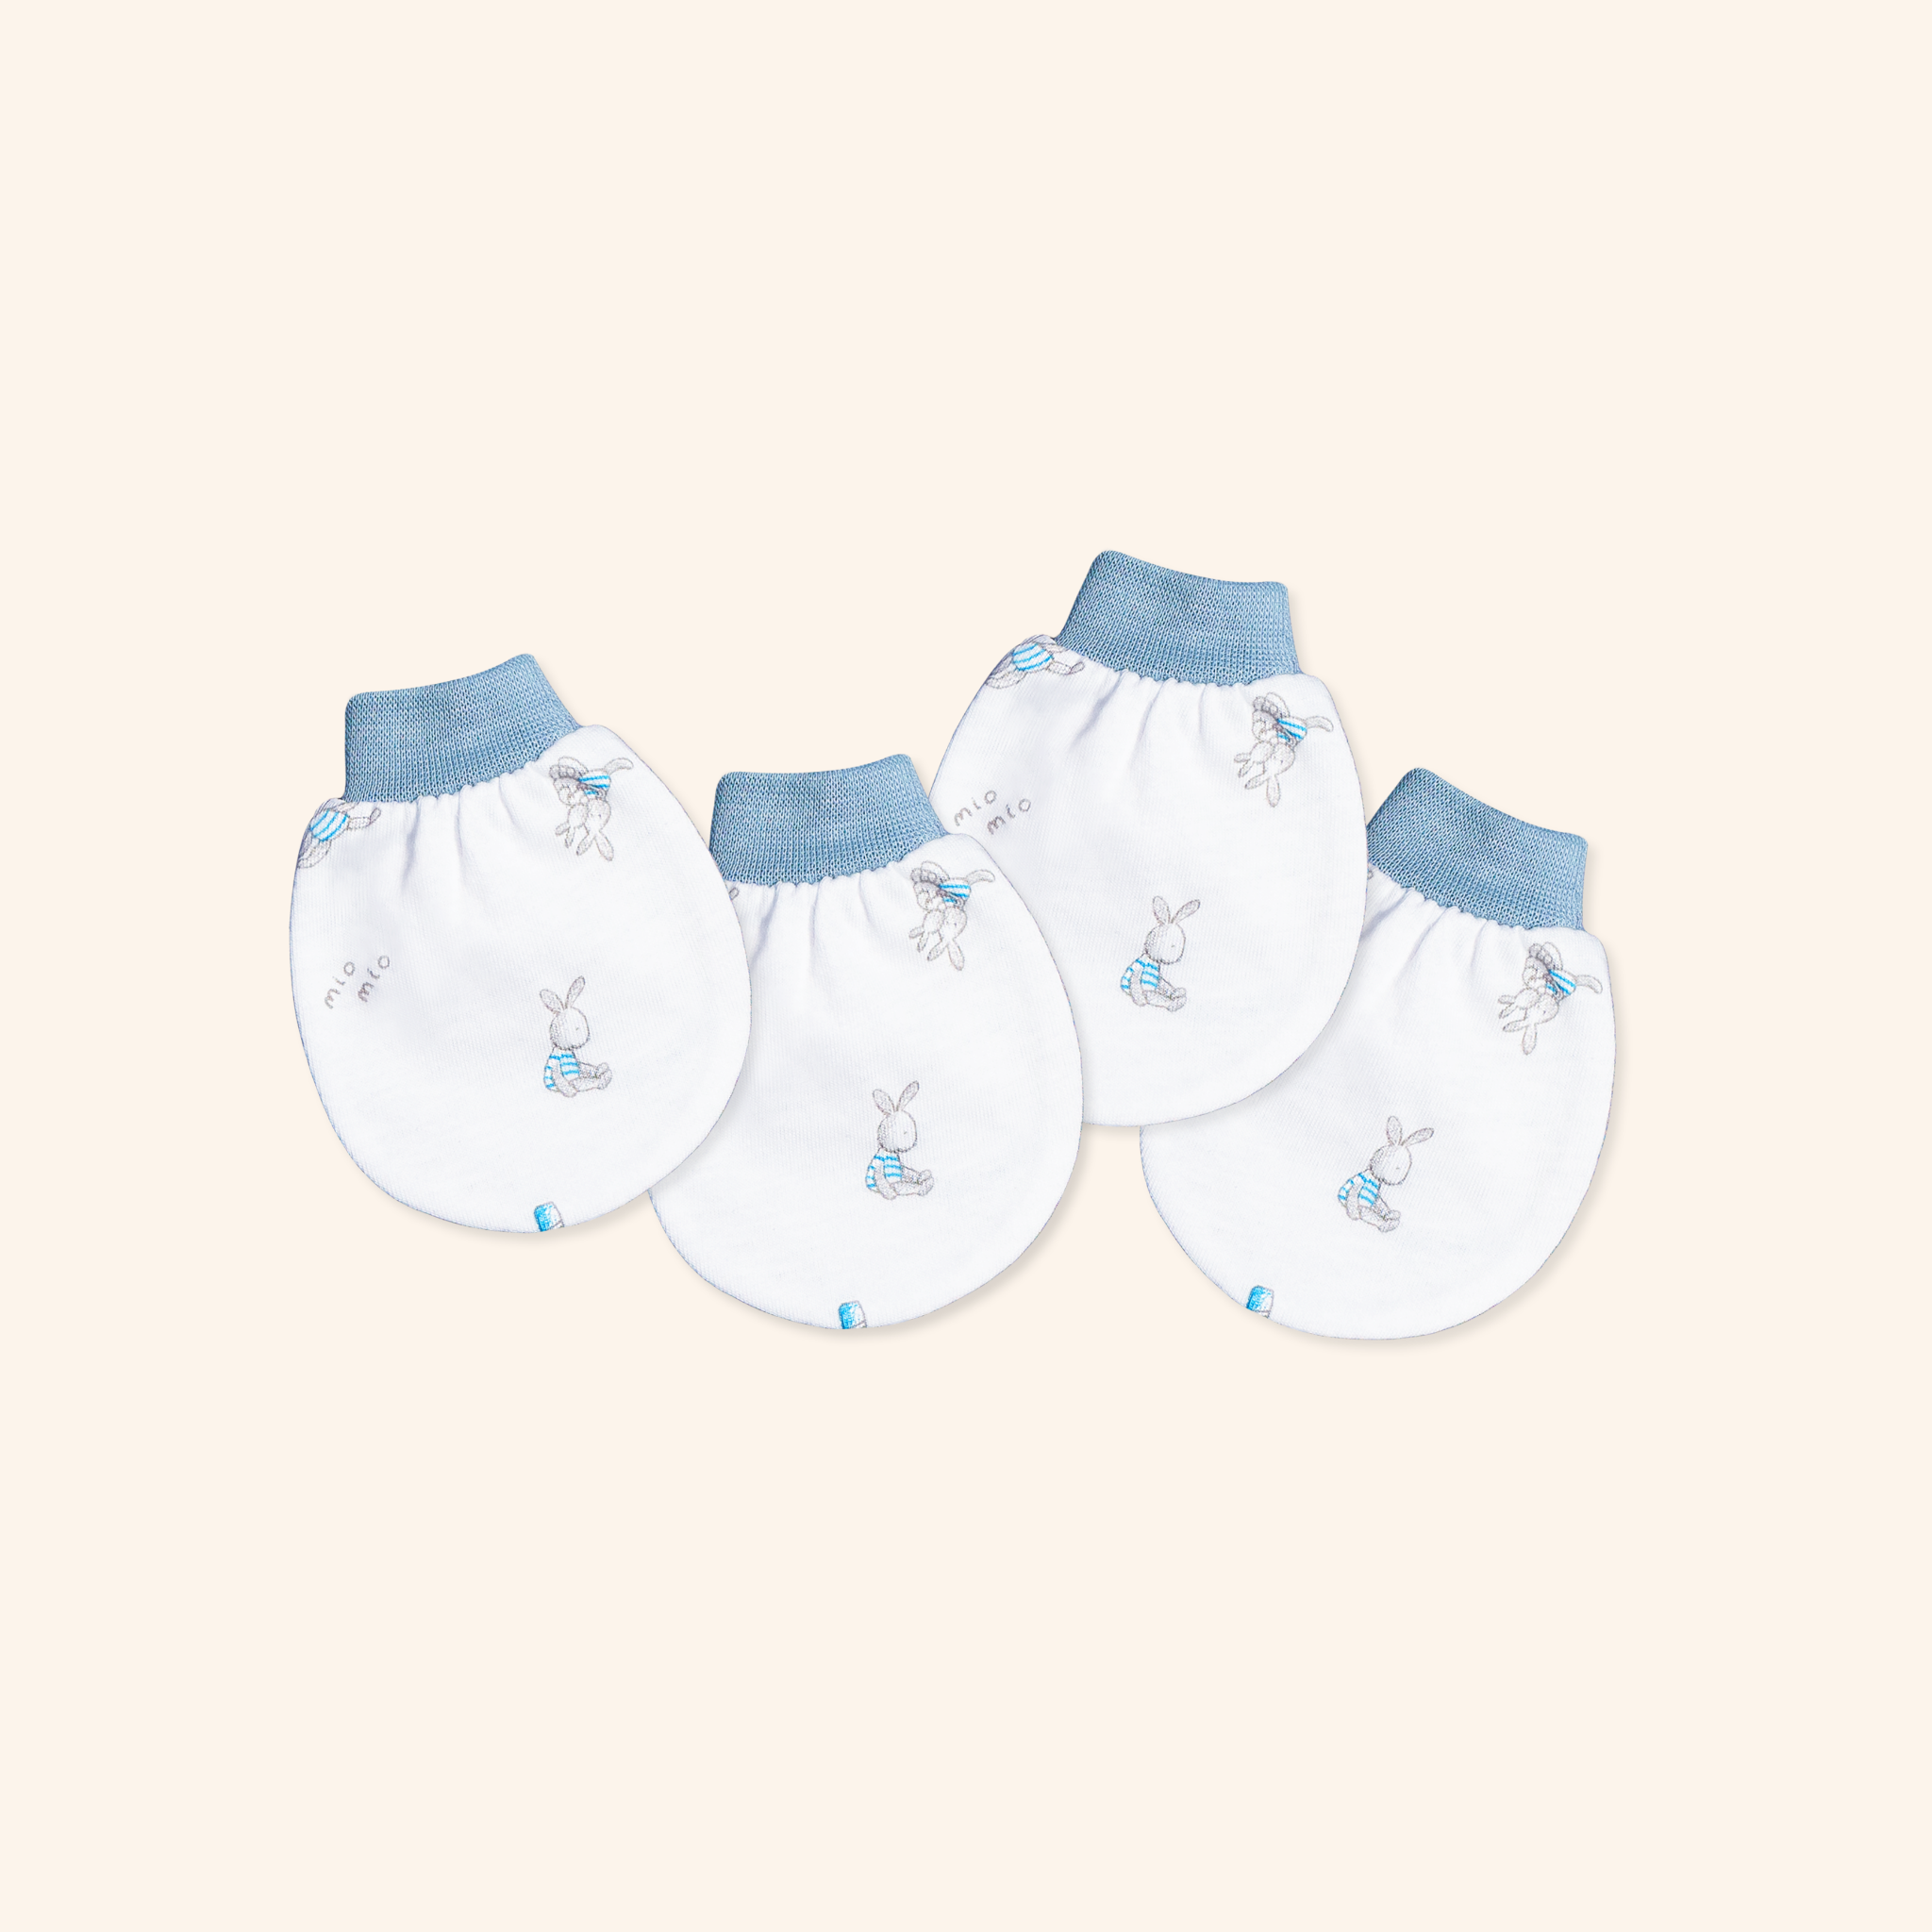 Set 2 đôi Bao tay bo thỏ xanh – Miomio – dành cho bé từ 0-24 tháng, chất lượng đảm bảo an toàn đến sức khỏe người sử dụng, cam kết hàng đúng mô tả